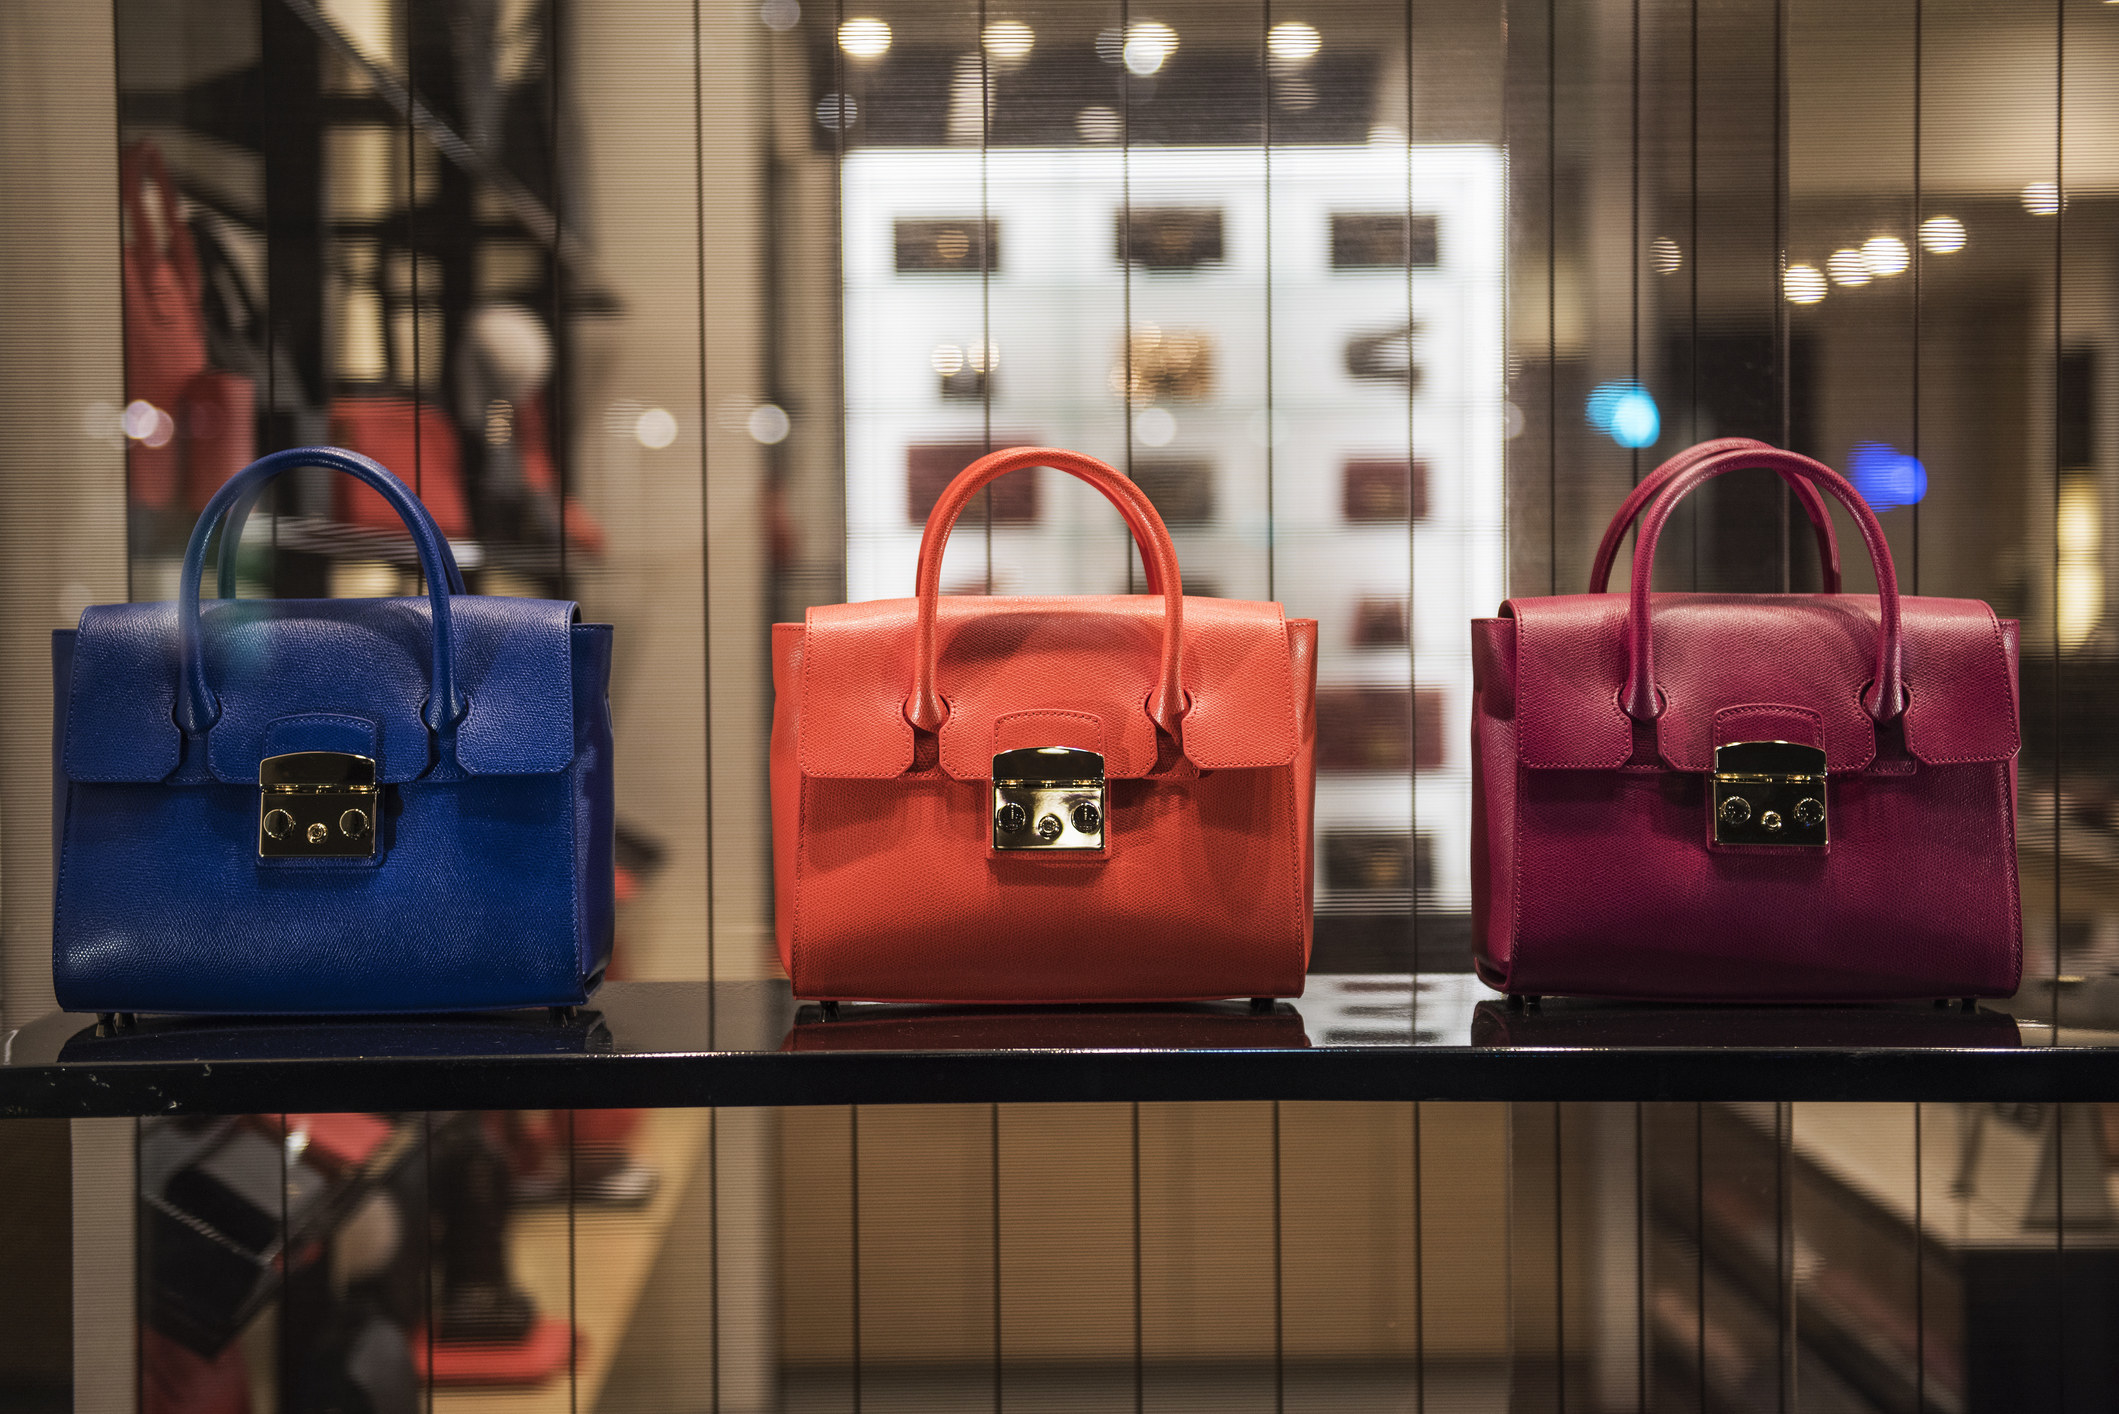 Luxury purses on display